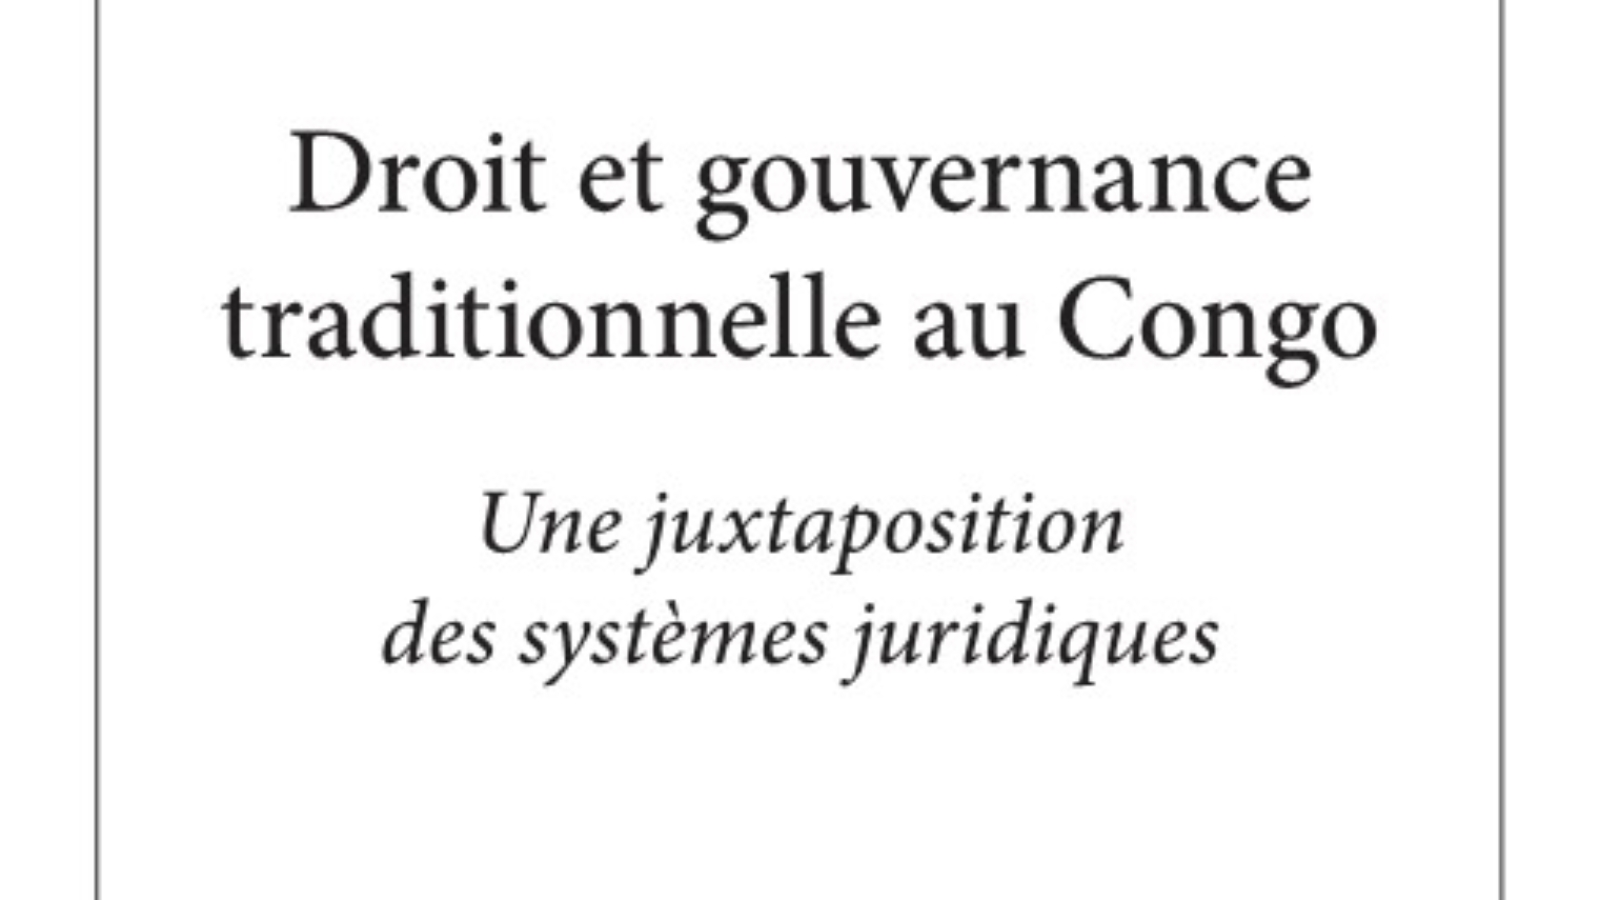 Droit et gouvernance traditionnelle au Congo